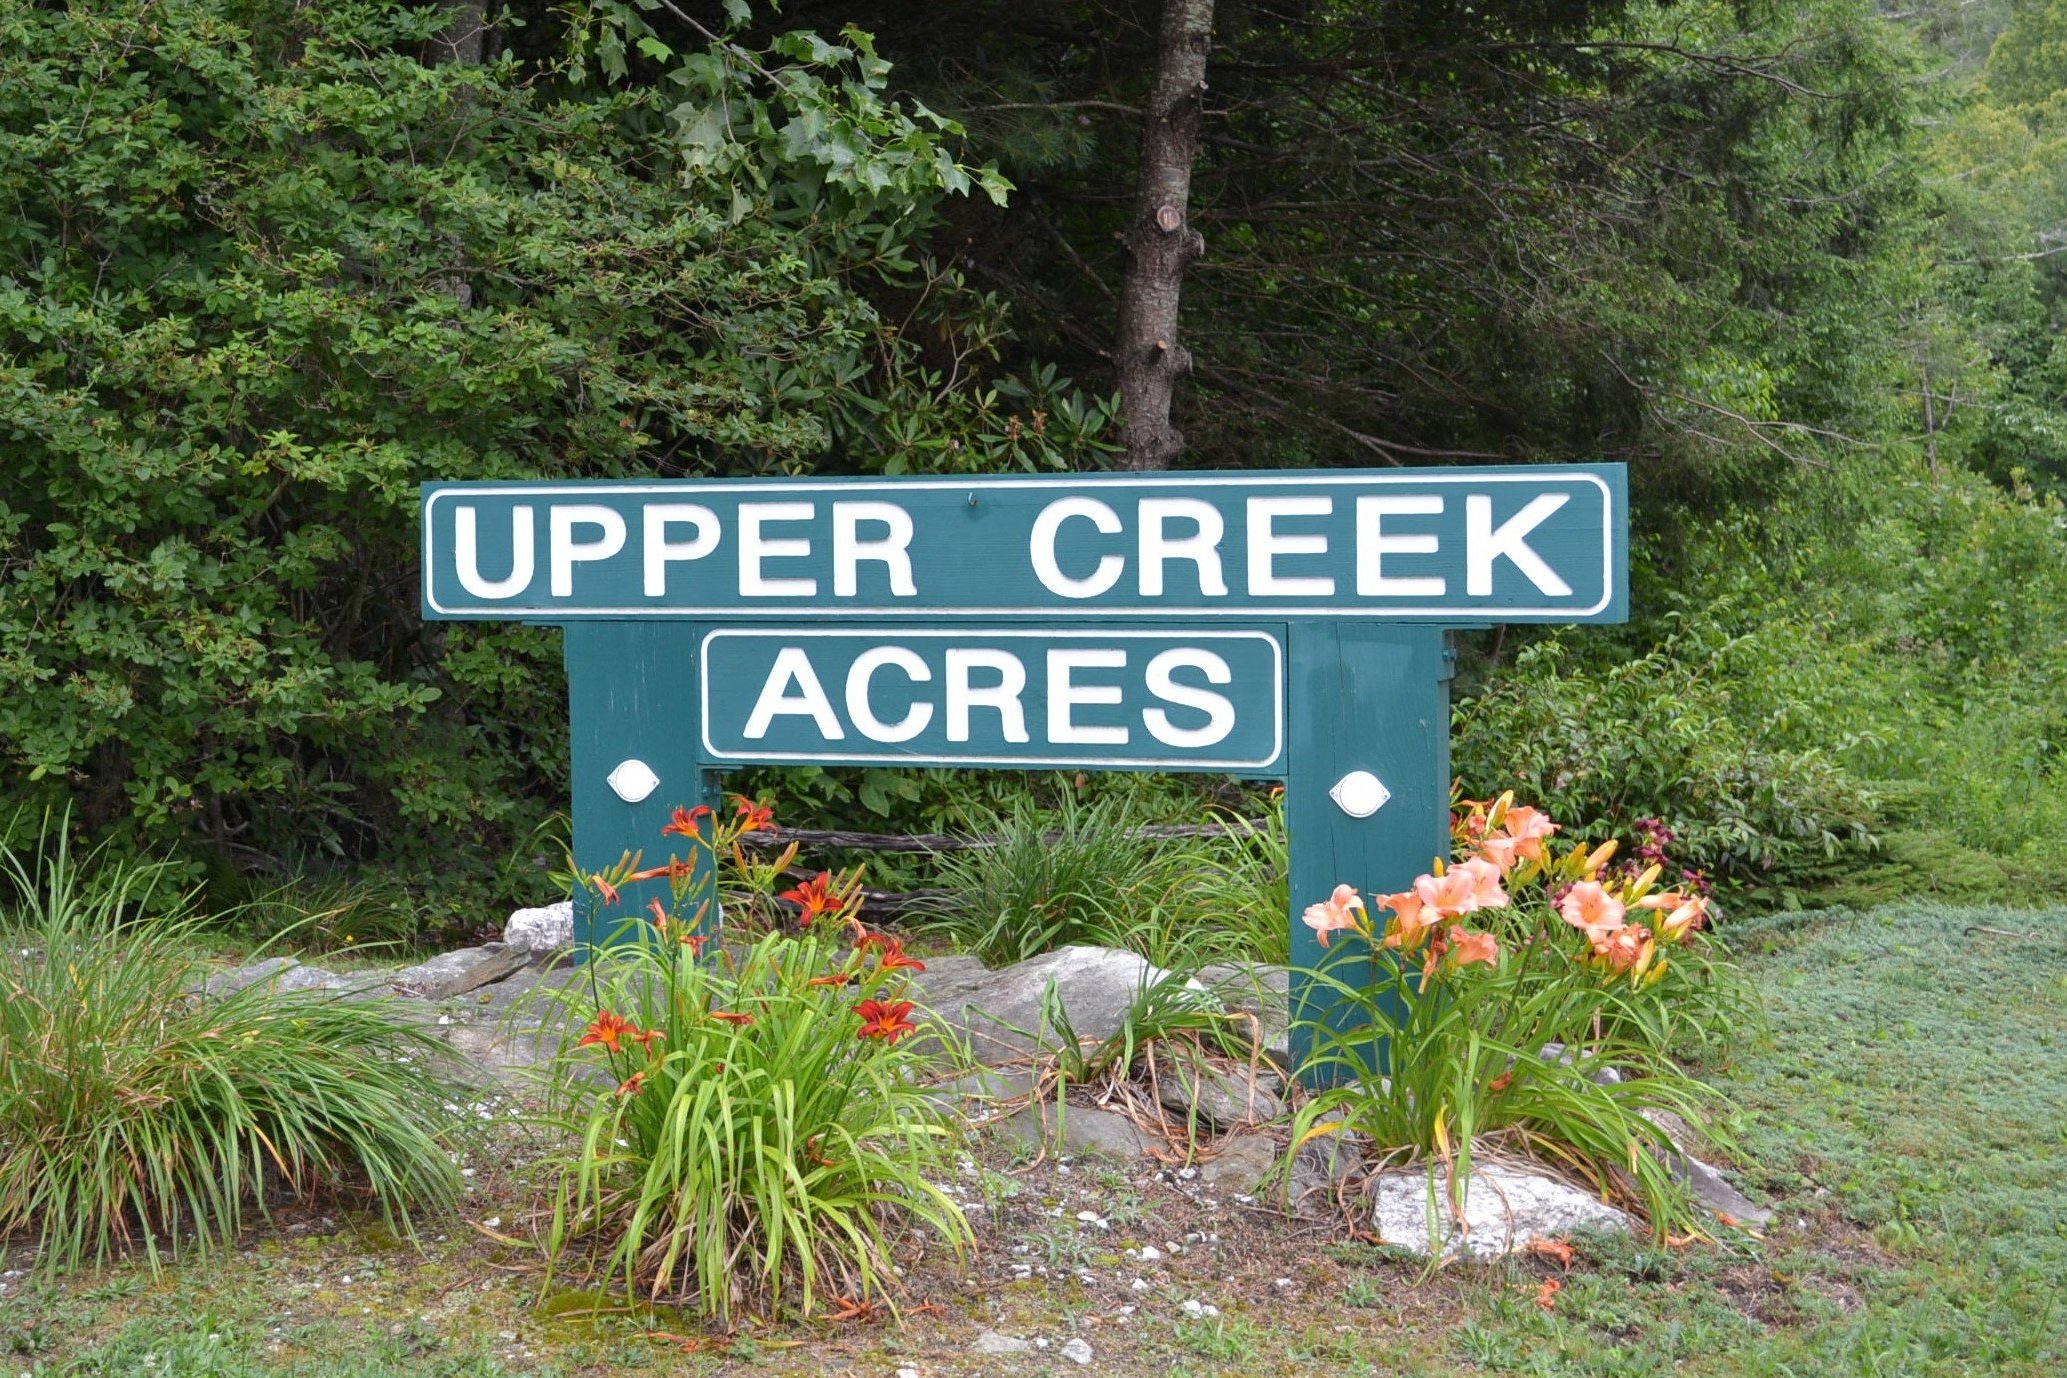 1.16 ac, Lot 332, Upper Creek Acres - $30,000